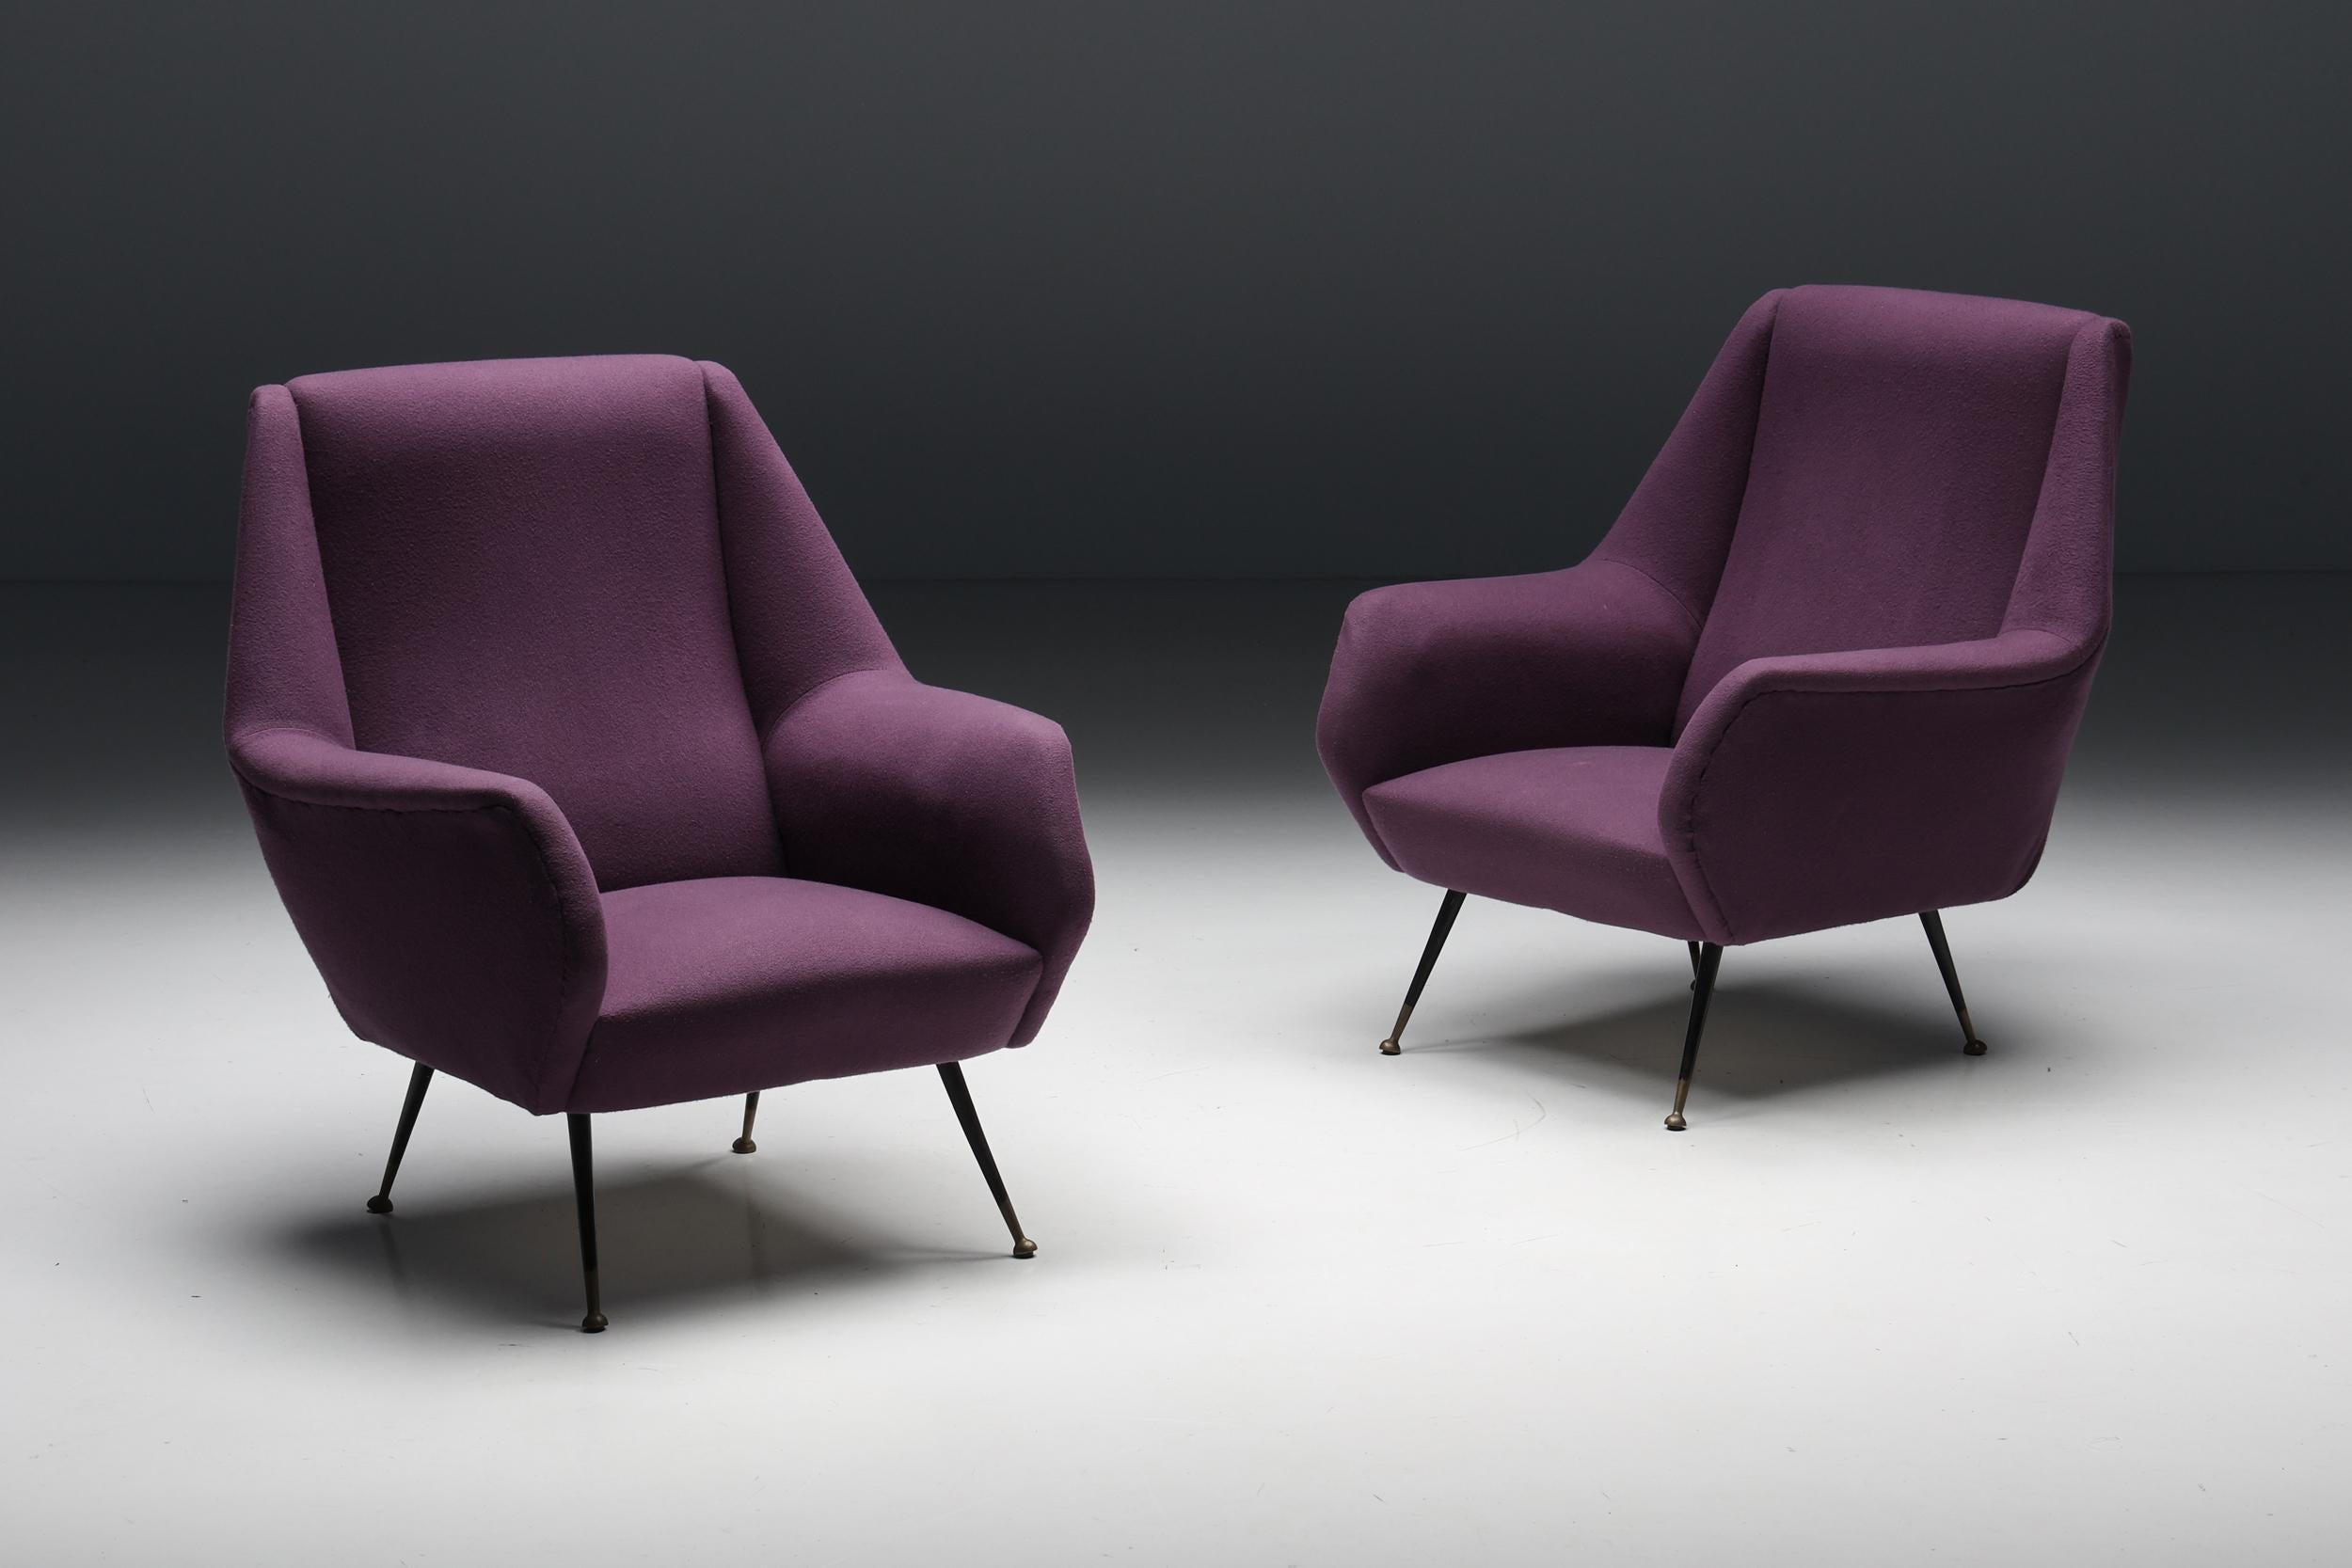 Italienisches Sesselpaar, von Ico Parisi, violetter Stoff.
Schwarze Metallbeine, die auf runden Messingfüßen enden.
Sessel im italienischen Chic der 1950er Jahre, die gut in eine eklektische, vom Hollywood Regency inspirierte Einrichtung passen